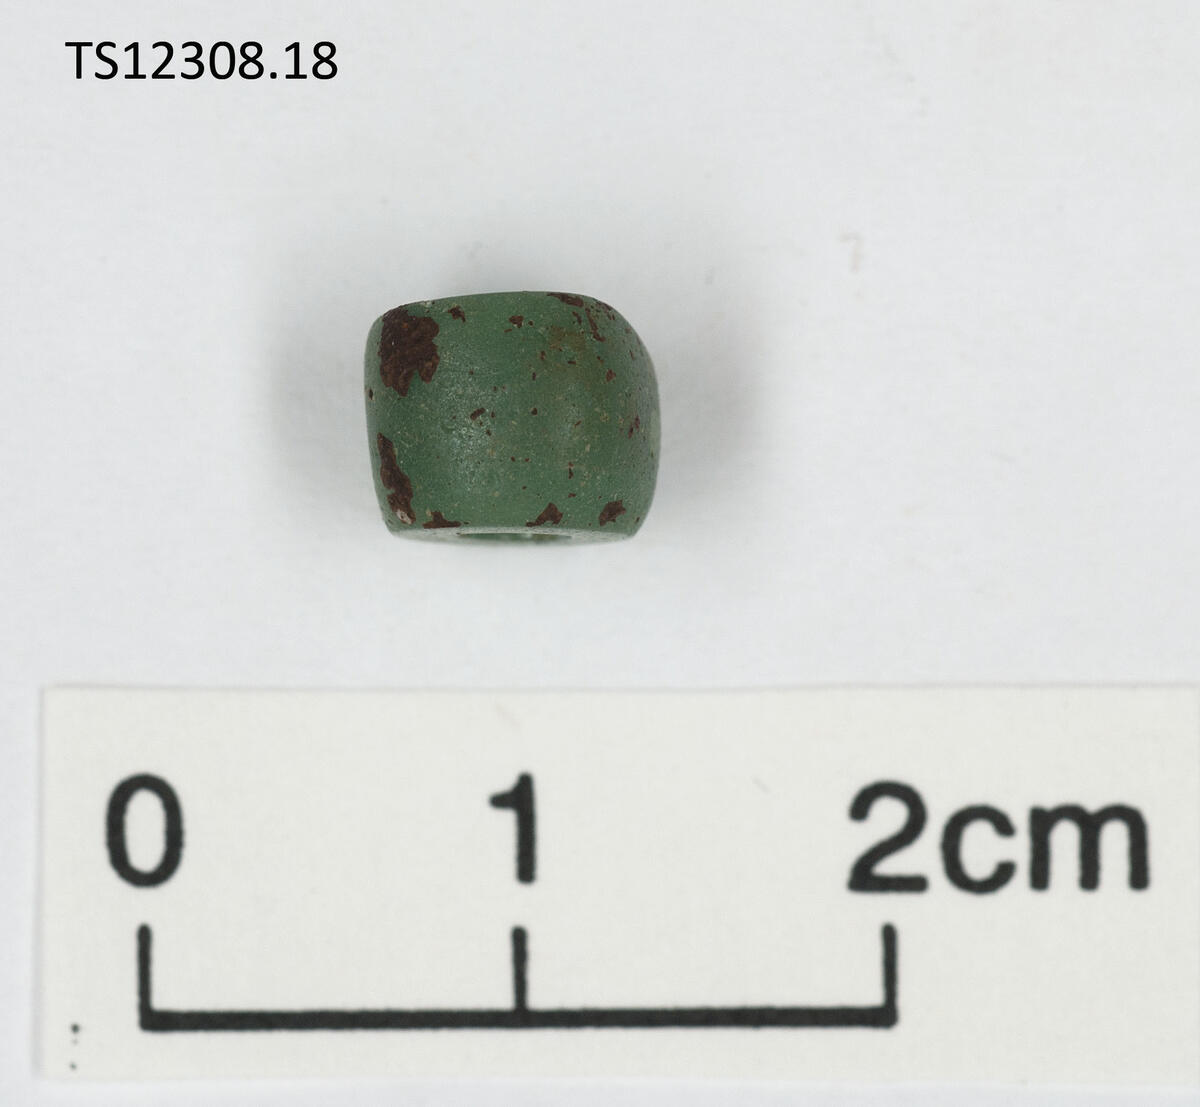 1 stk perle av glass. Opak, Grønn.  Ringformet, med skarpt avskårne endeflater. 0,9 cm i diameter, 0,6 cm tykk.